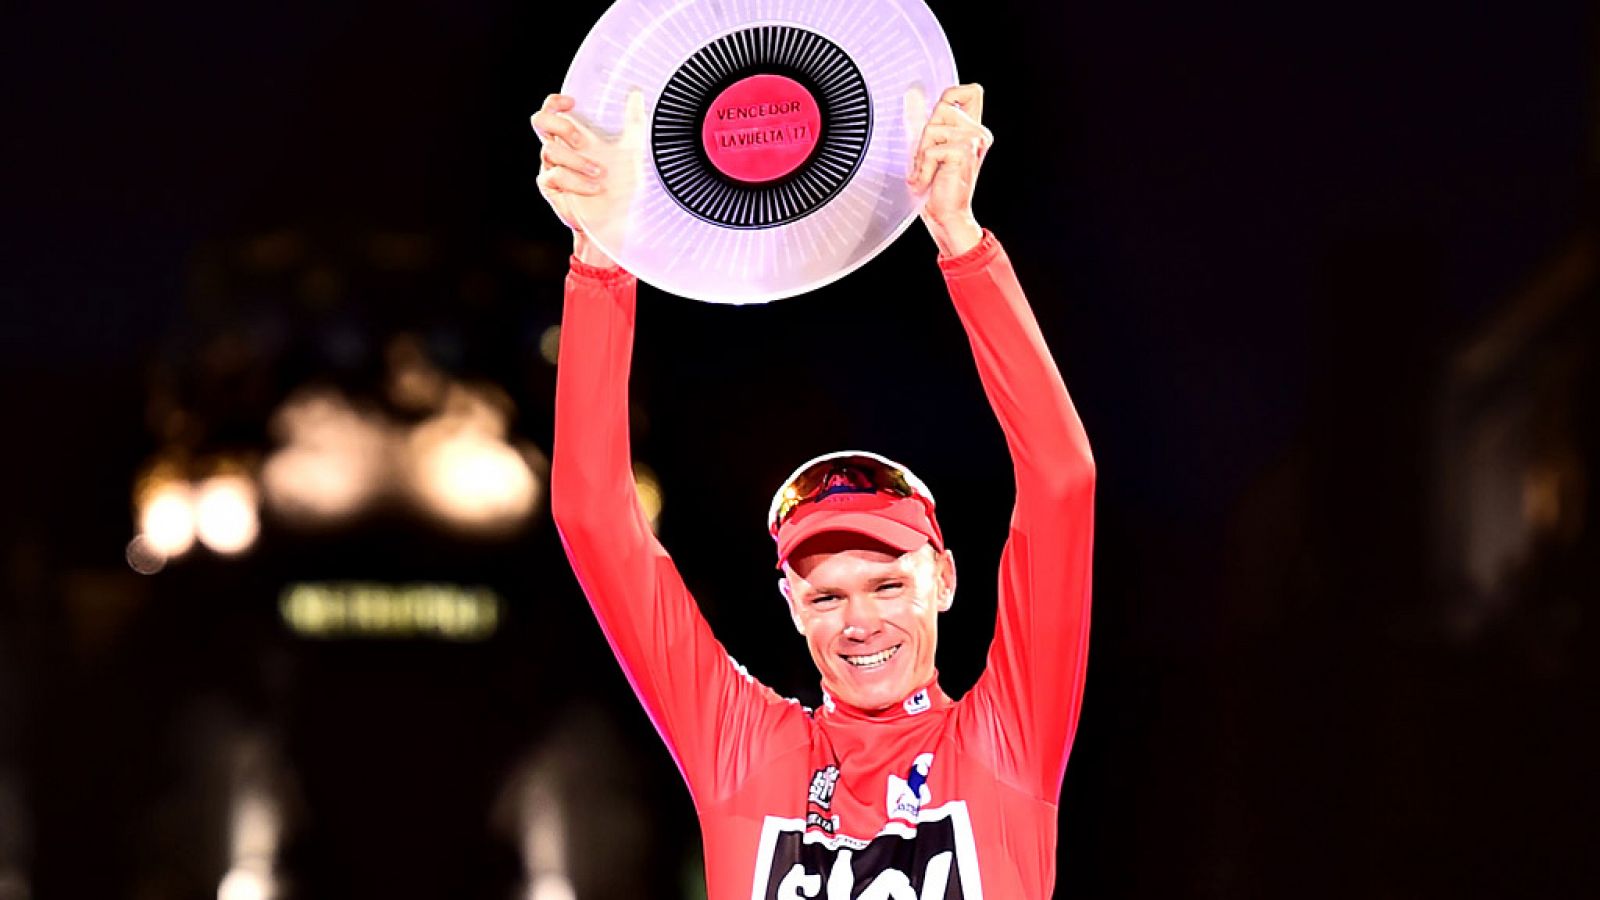 El británico Chris Froome (Sky) se ha proclamado vencedor de la 72 edición de la Vuelta a España tras la disputa de la vigésima primera y última etapa, entre Arroyomolinos y Madrid, de 117,6 kilómetros, en la que el italiano Matteo Trentin (Quick Ste